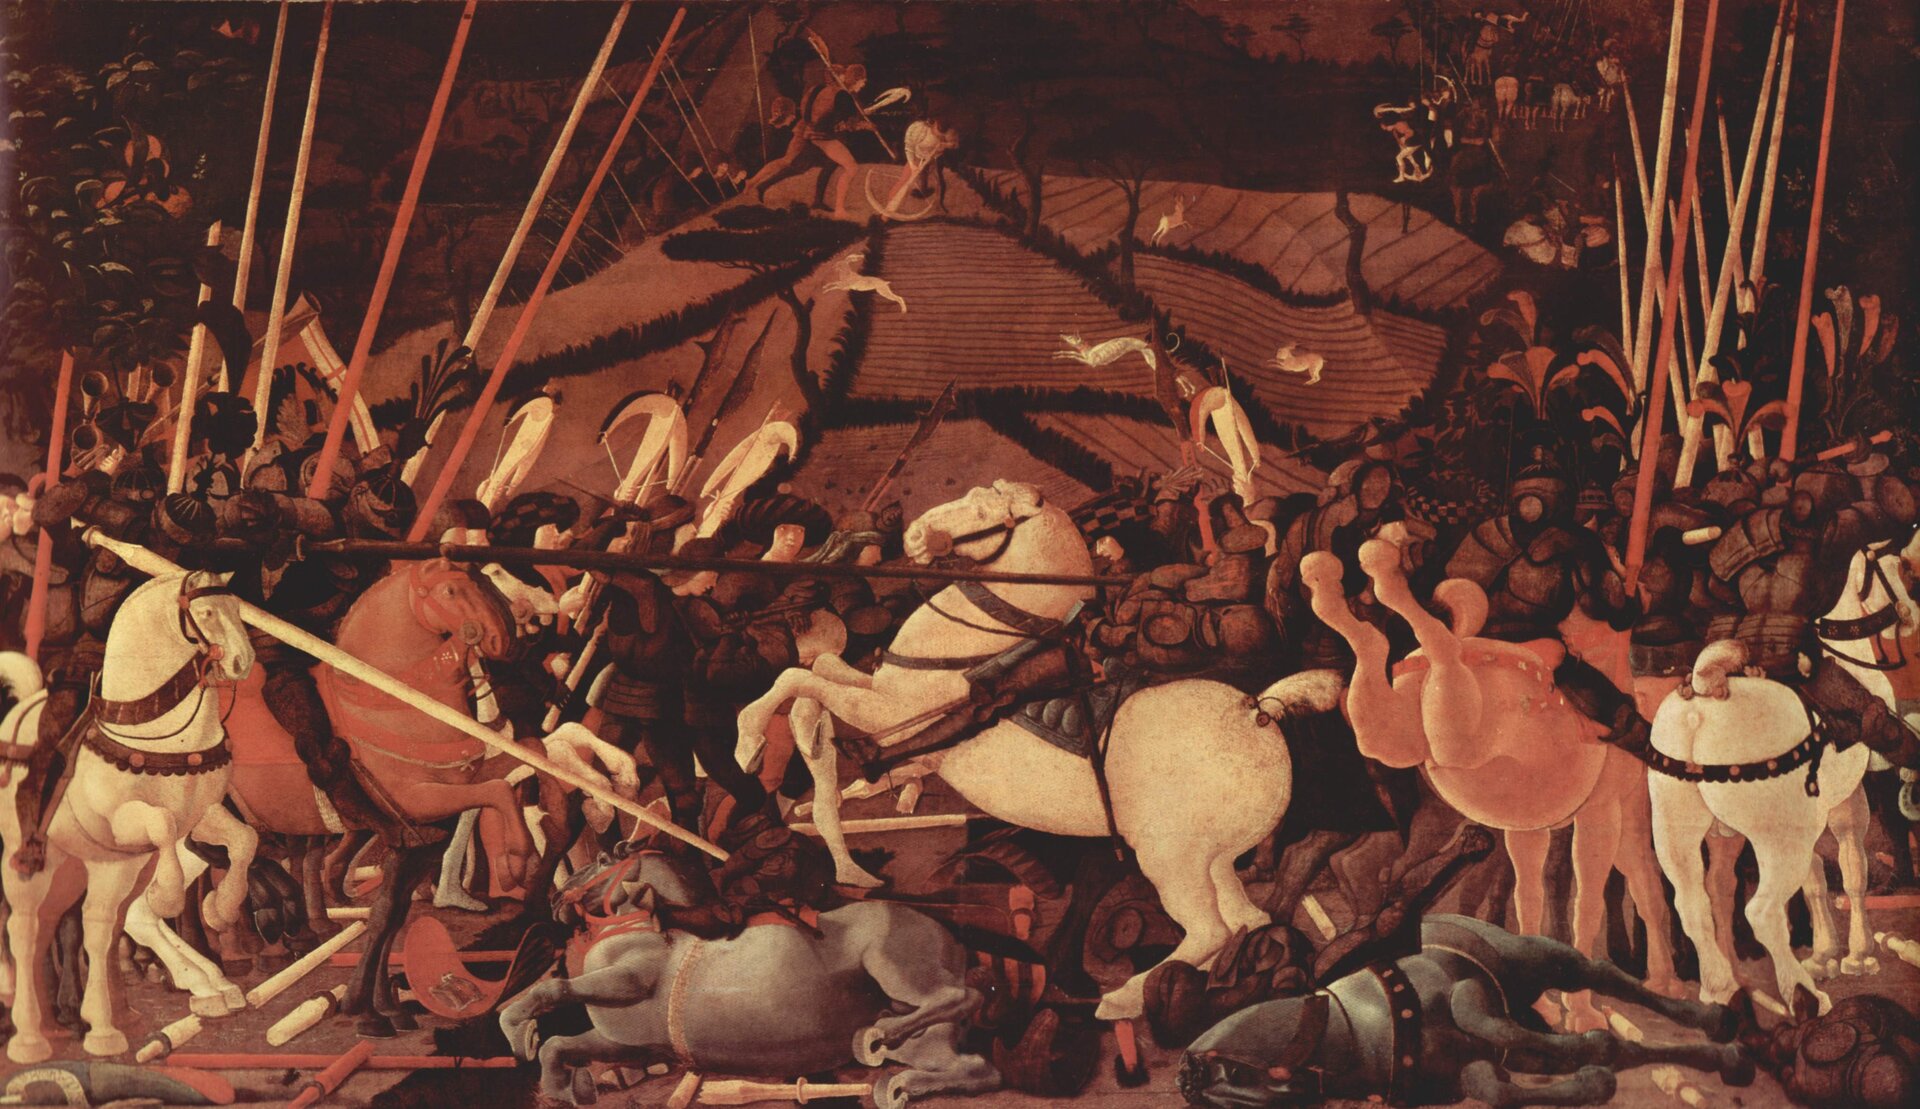 Ilustracja przedstawia obraz Paolo Uccello pt. „Bitwa pod San Romano (II)”. Na obrazie znajduje się tłum walczących ludzi podczas bitwy. Bohaterowie na pierwszym planie znajdują się na koniach. W dłoniach trzymają miecze. Ubrani są w zbroje oraz na głowach mają hełmy. Na obrazie panuje chaos. Walczący wraz ze zwierzętami leżą polegli na ziemi.